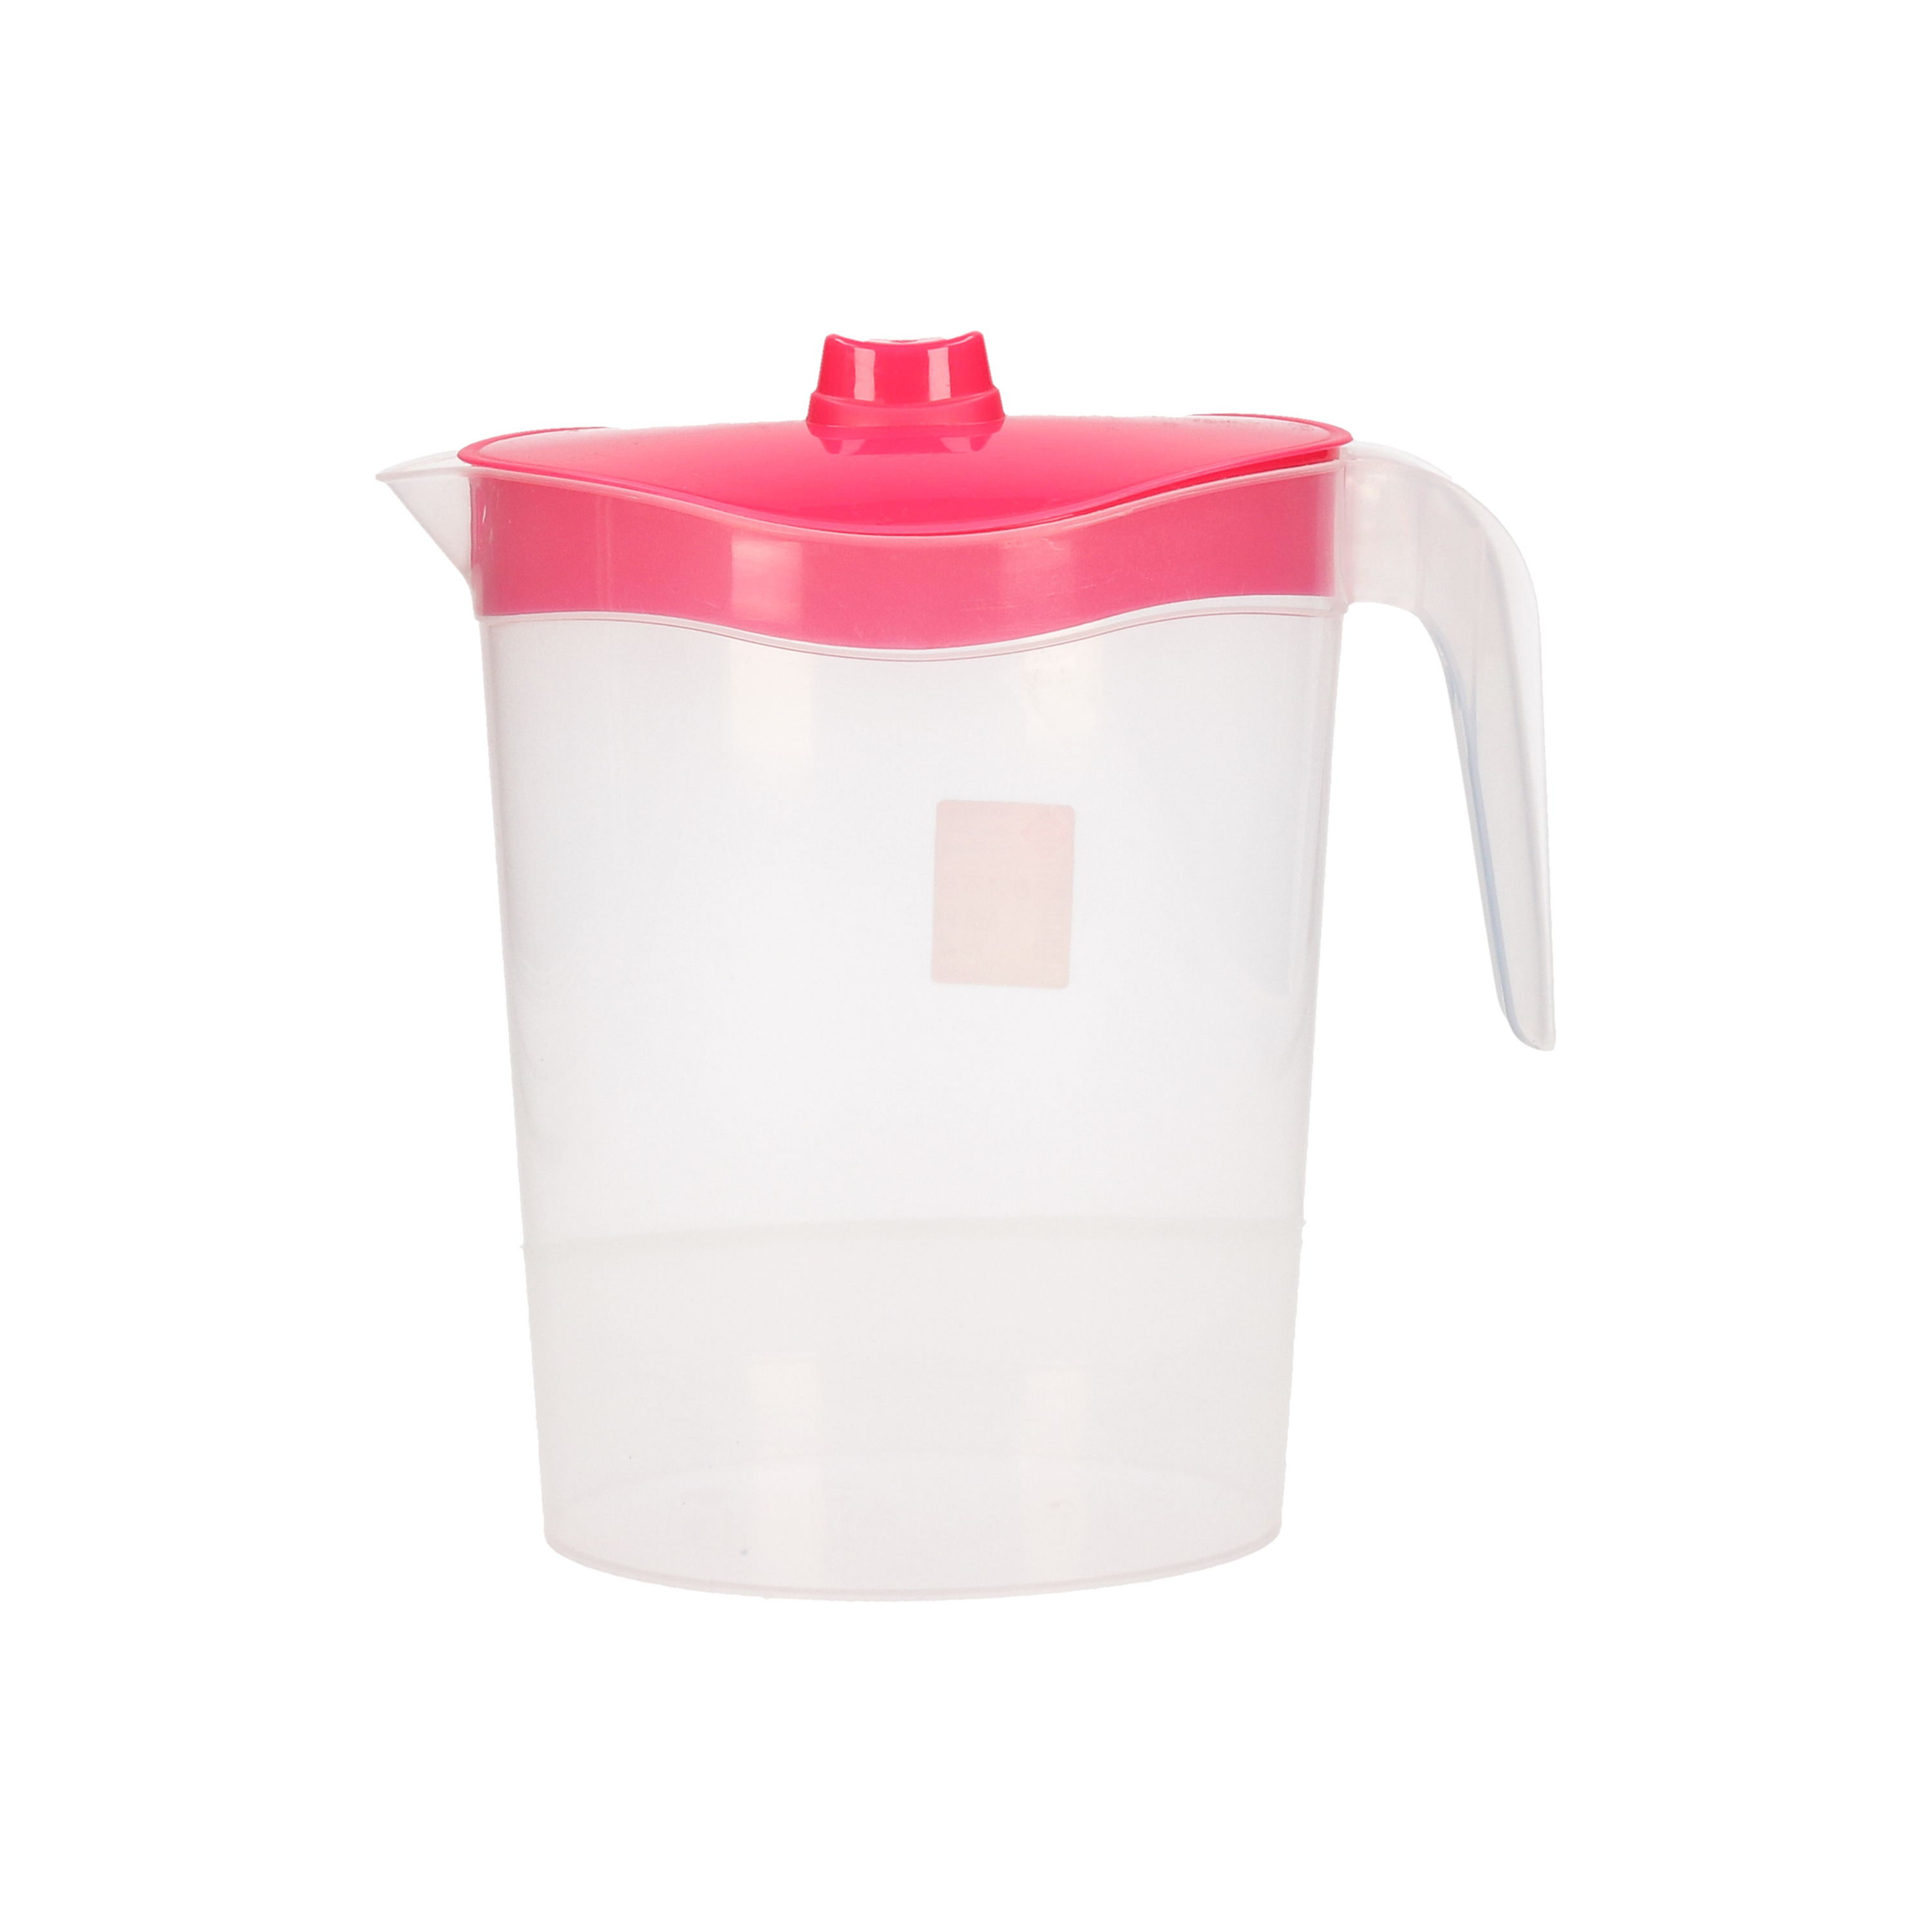 1x Waterkannen/sapkannen met roze deksel 2,5 liter kunststof